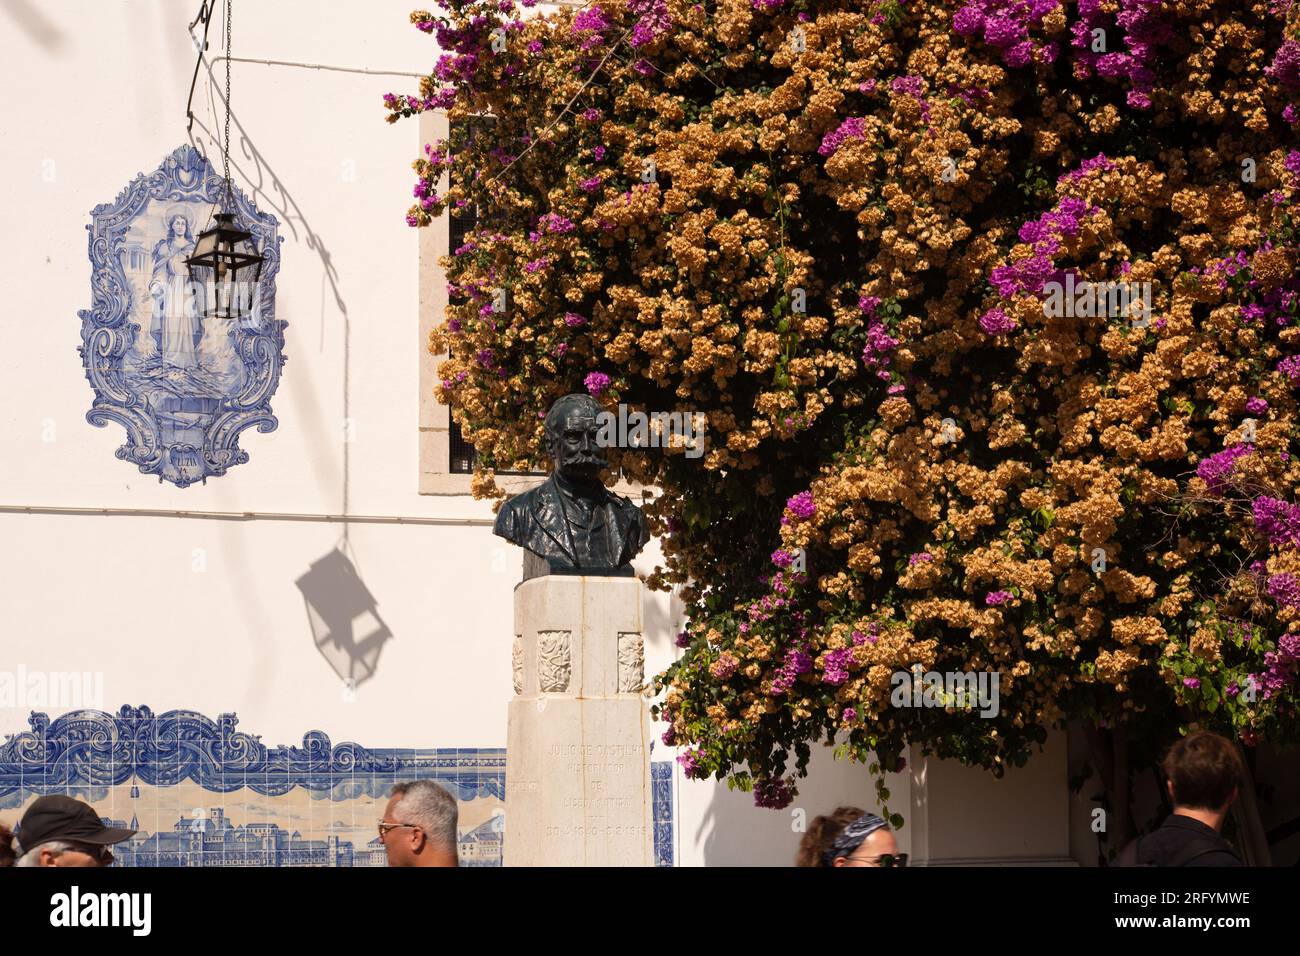 Passeggiando per le affascinanti strade di Lisbona, dove ogni angolo svela meraviglie architettoniche e attrazioni iconiche, catturando il vivace essenc della città Foto Stock